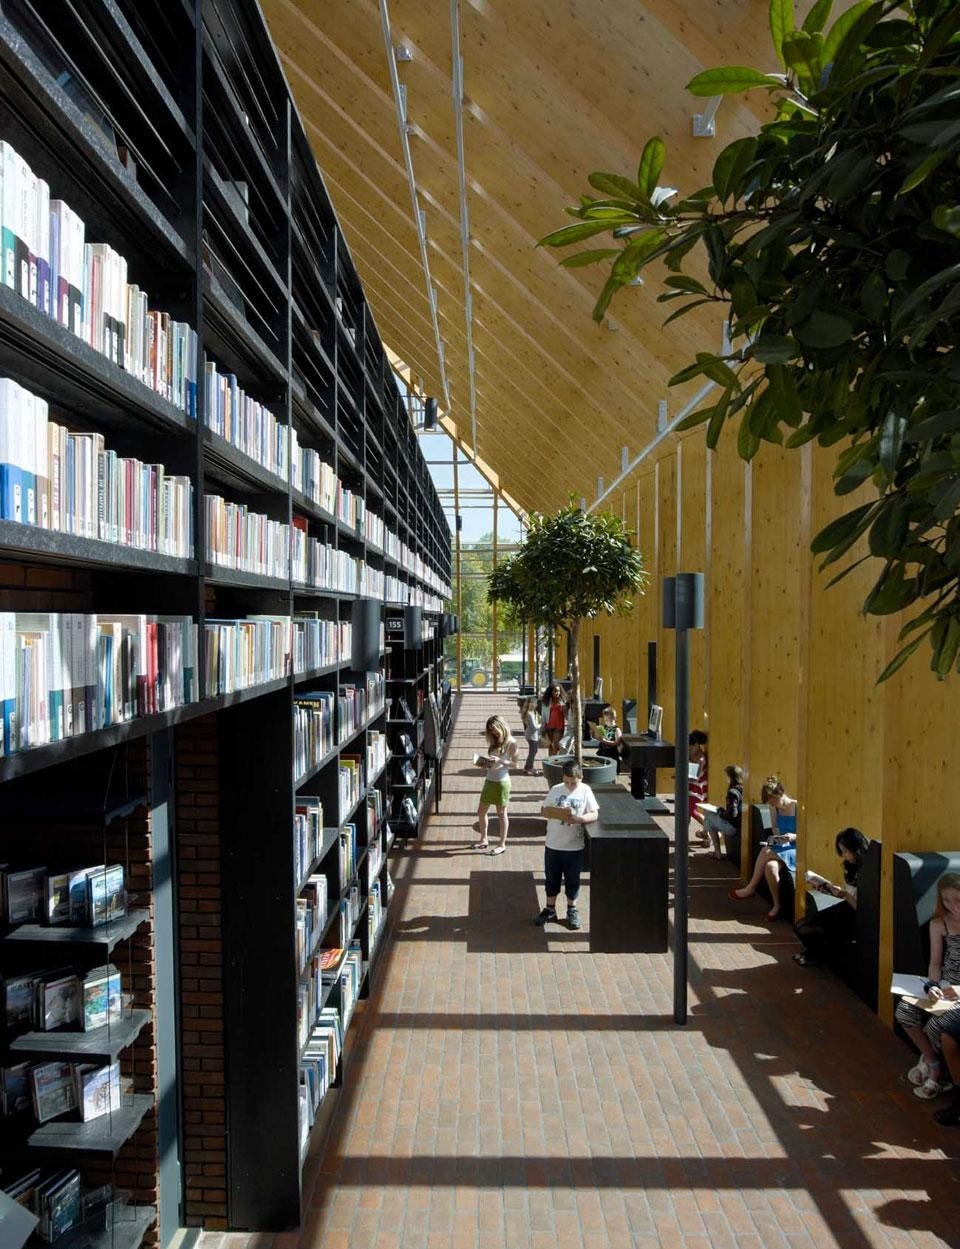 MVRDV, Spijkenisse Book Mountain, nuova biblioteca di Spijkenisse, Olanda 2012. Un riferimento al passato agricolo della città è nel sistema di scaffalature, realizzato con vasi riciclati, economici e perfetti dal punto di vista funzionale
